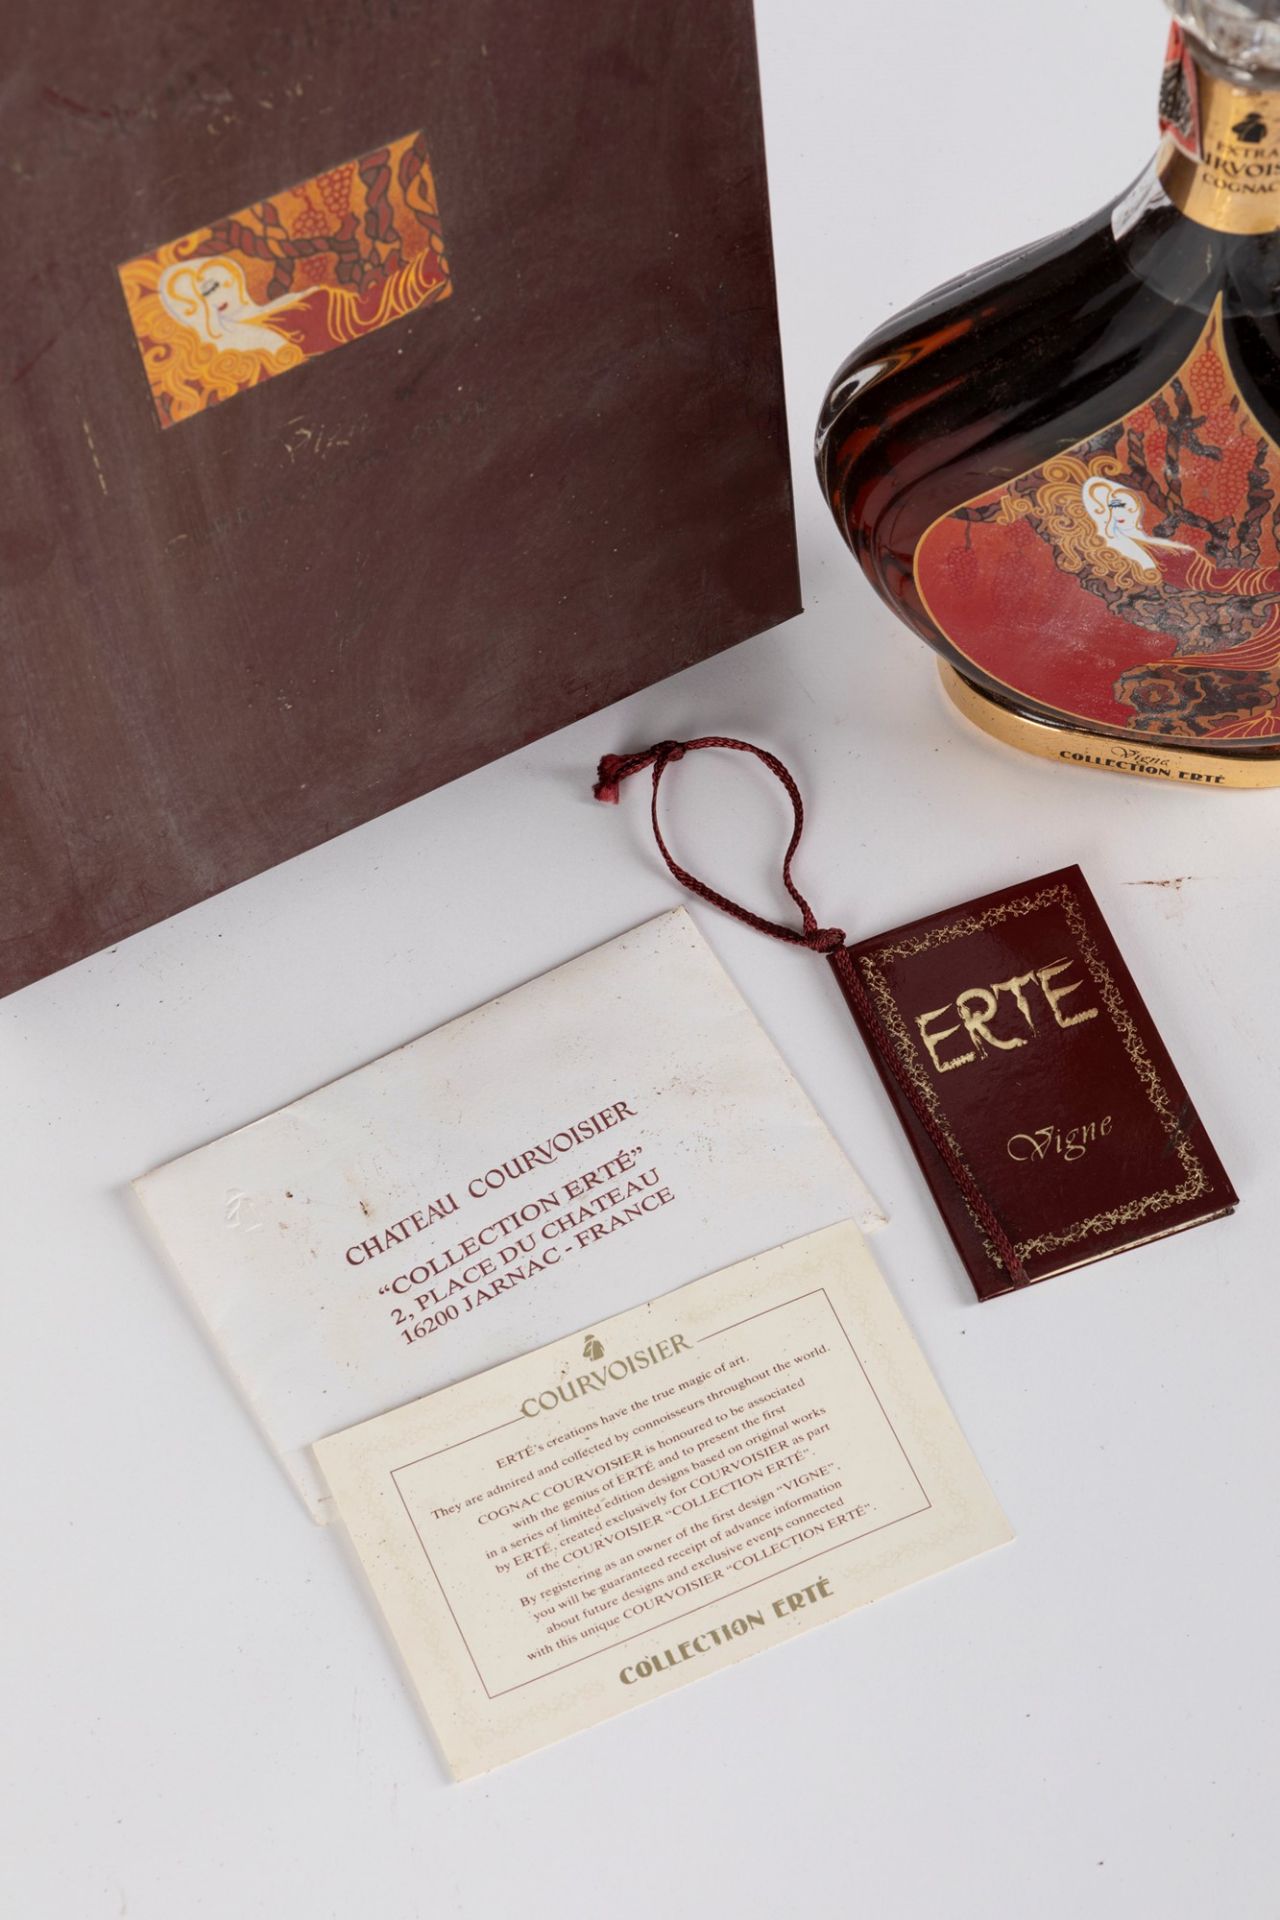 France - Cognac / Courvoisier Collection Ertè 'Vigne' - Bild 2 aus 2